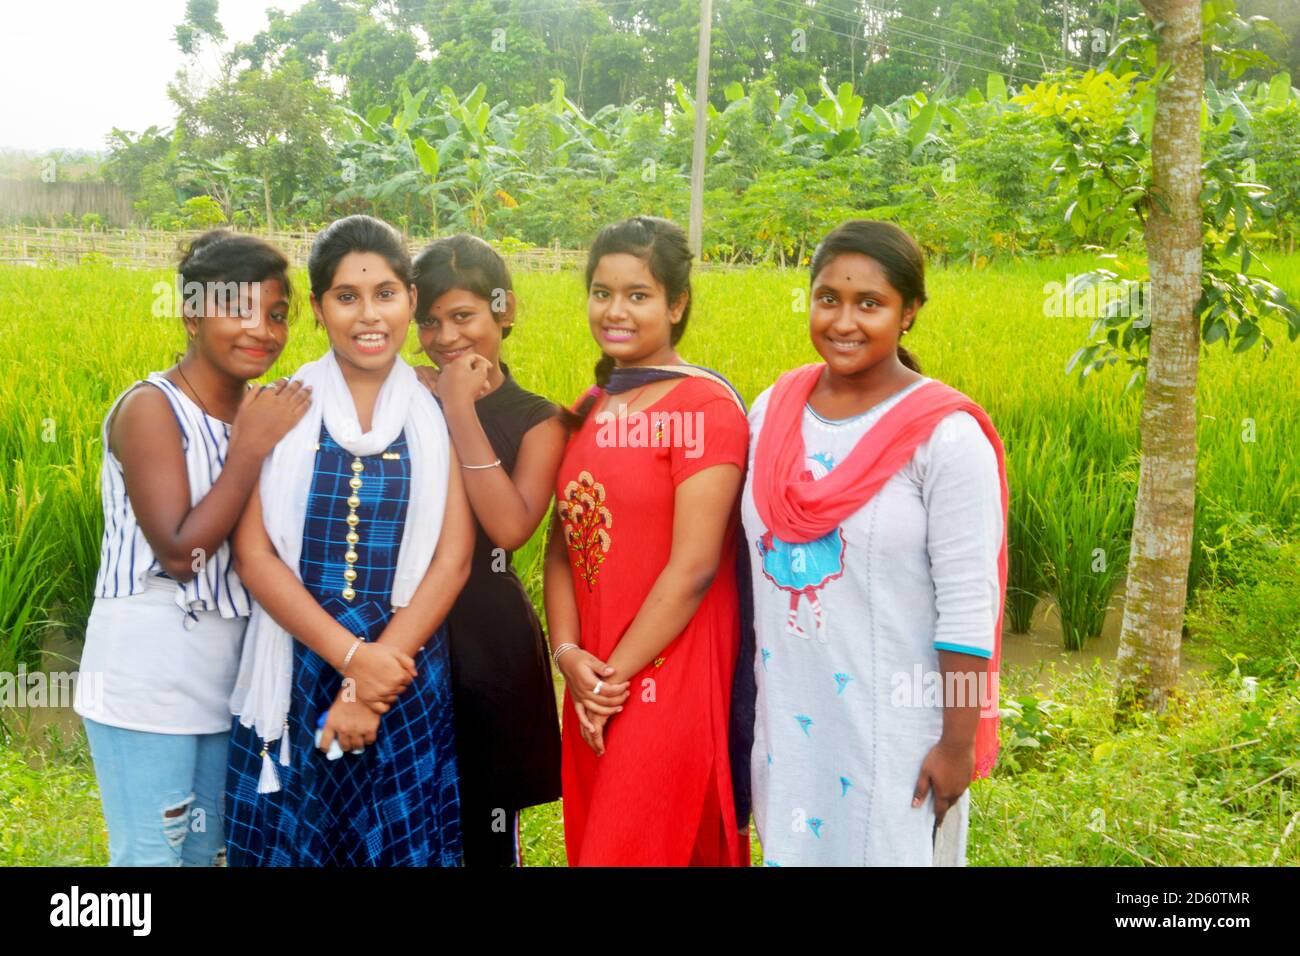 Nahaufnahme von sechs indischen Teenager-Mädchen in traditionellen bunten indischen Kleid und posiert vor einem Reisfeld, selektive Fokussierung Stockfoto